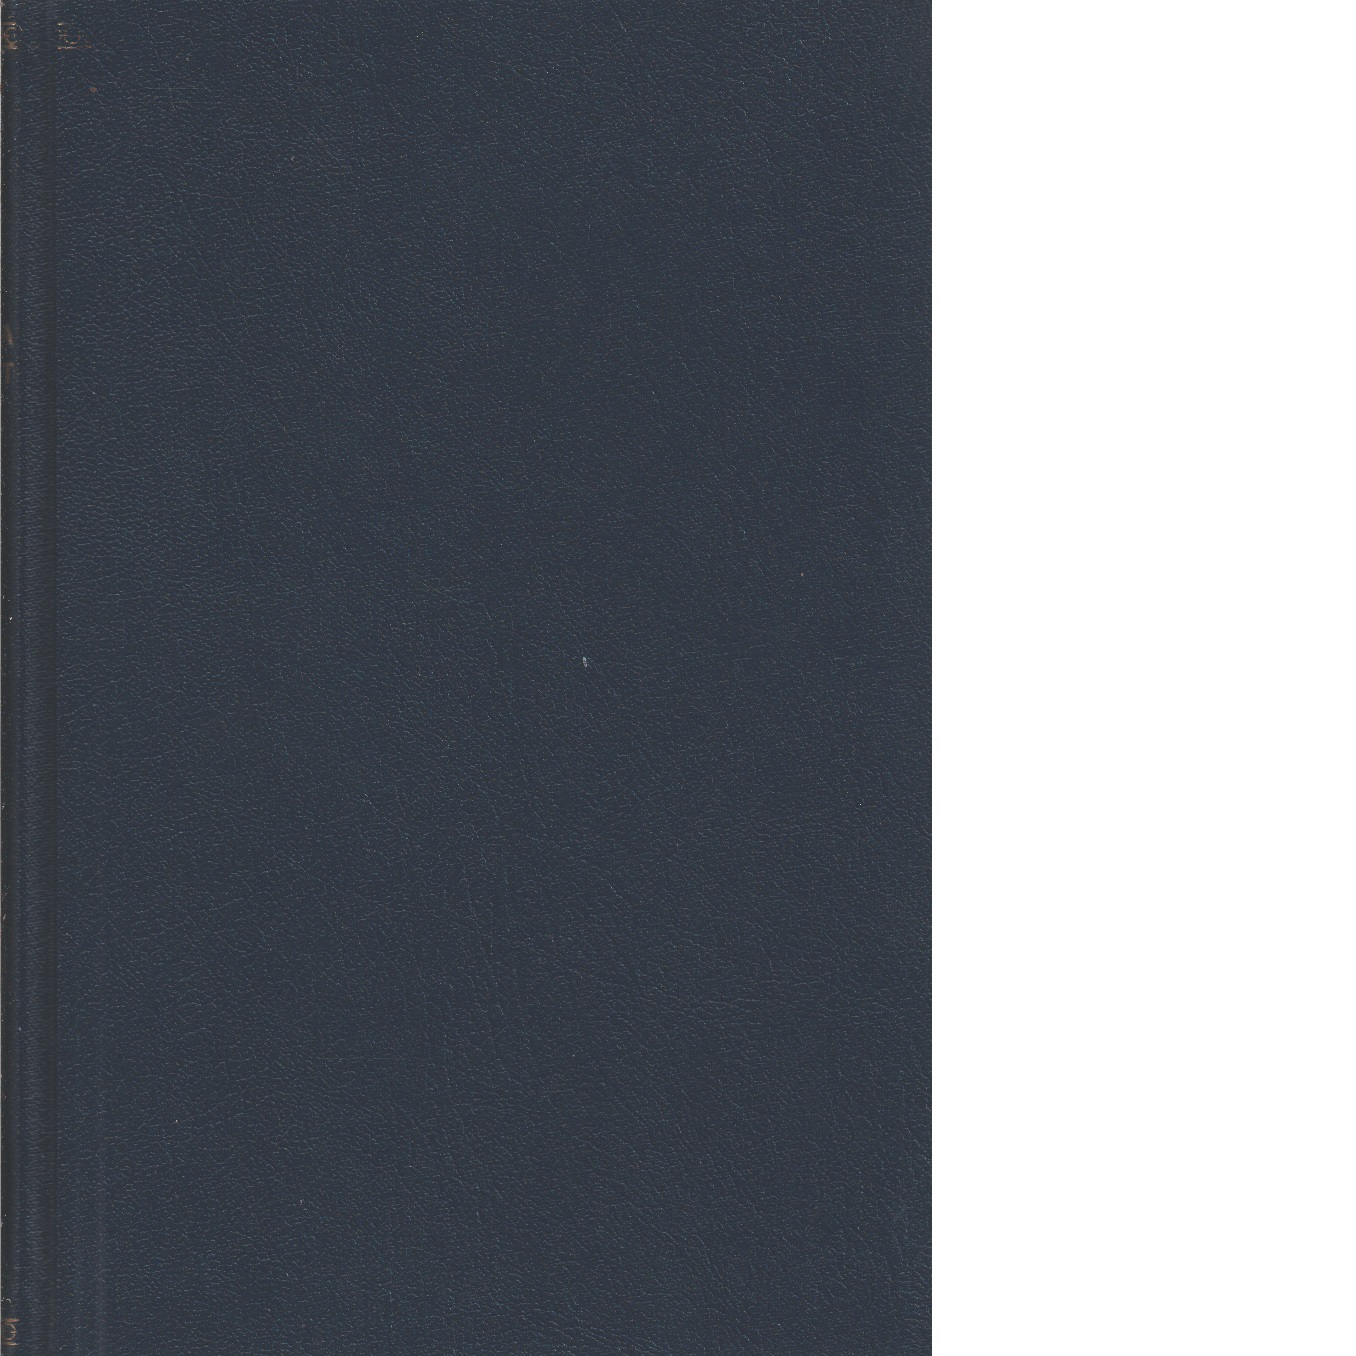 Karolinska förbundets årsbok    1916-17 - Karolinska förbundet